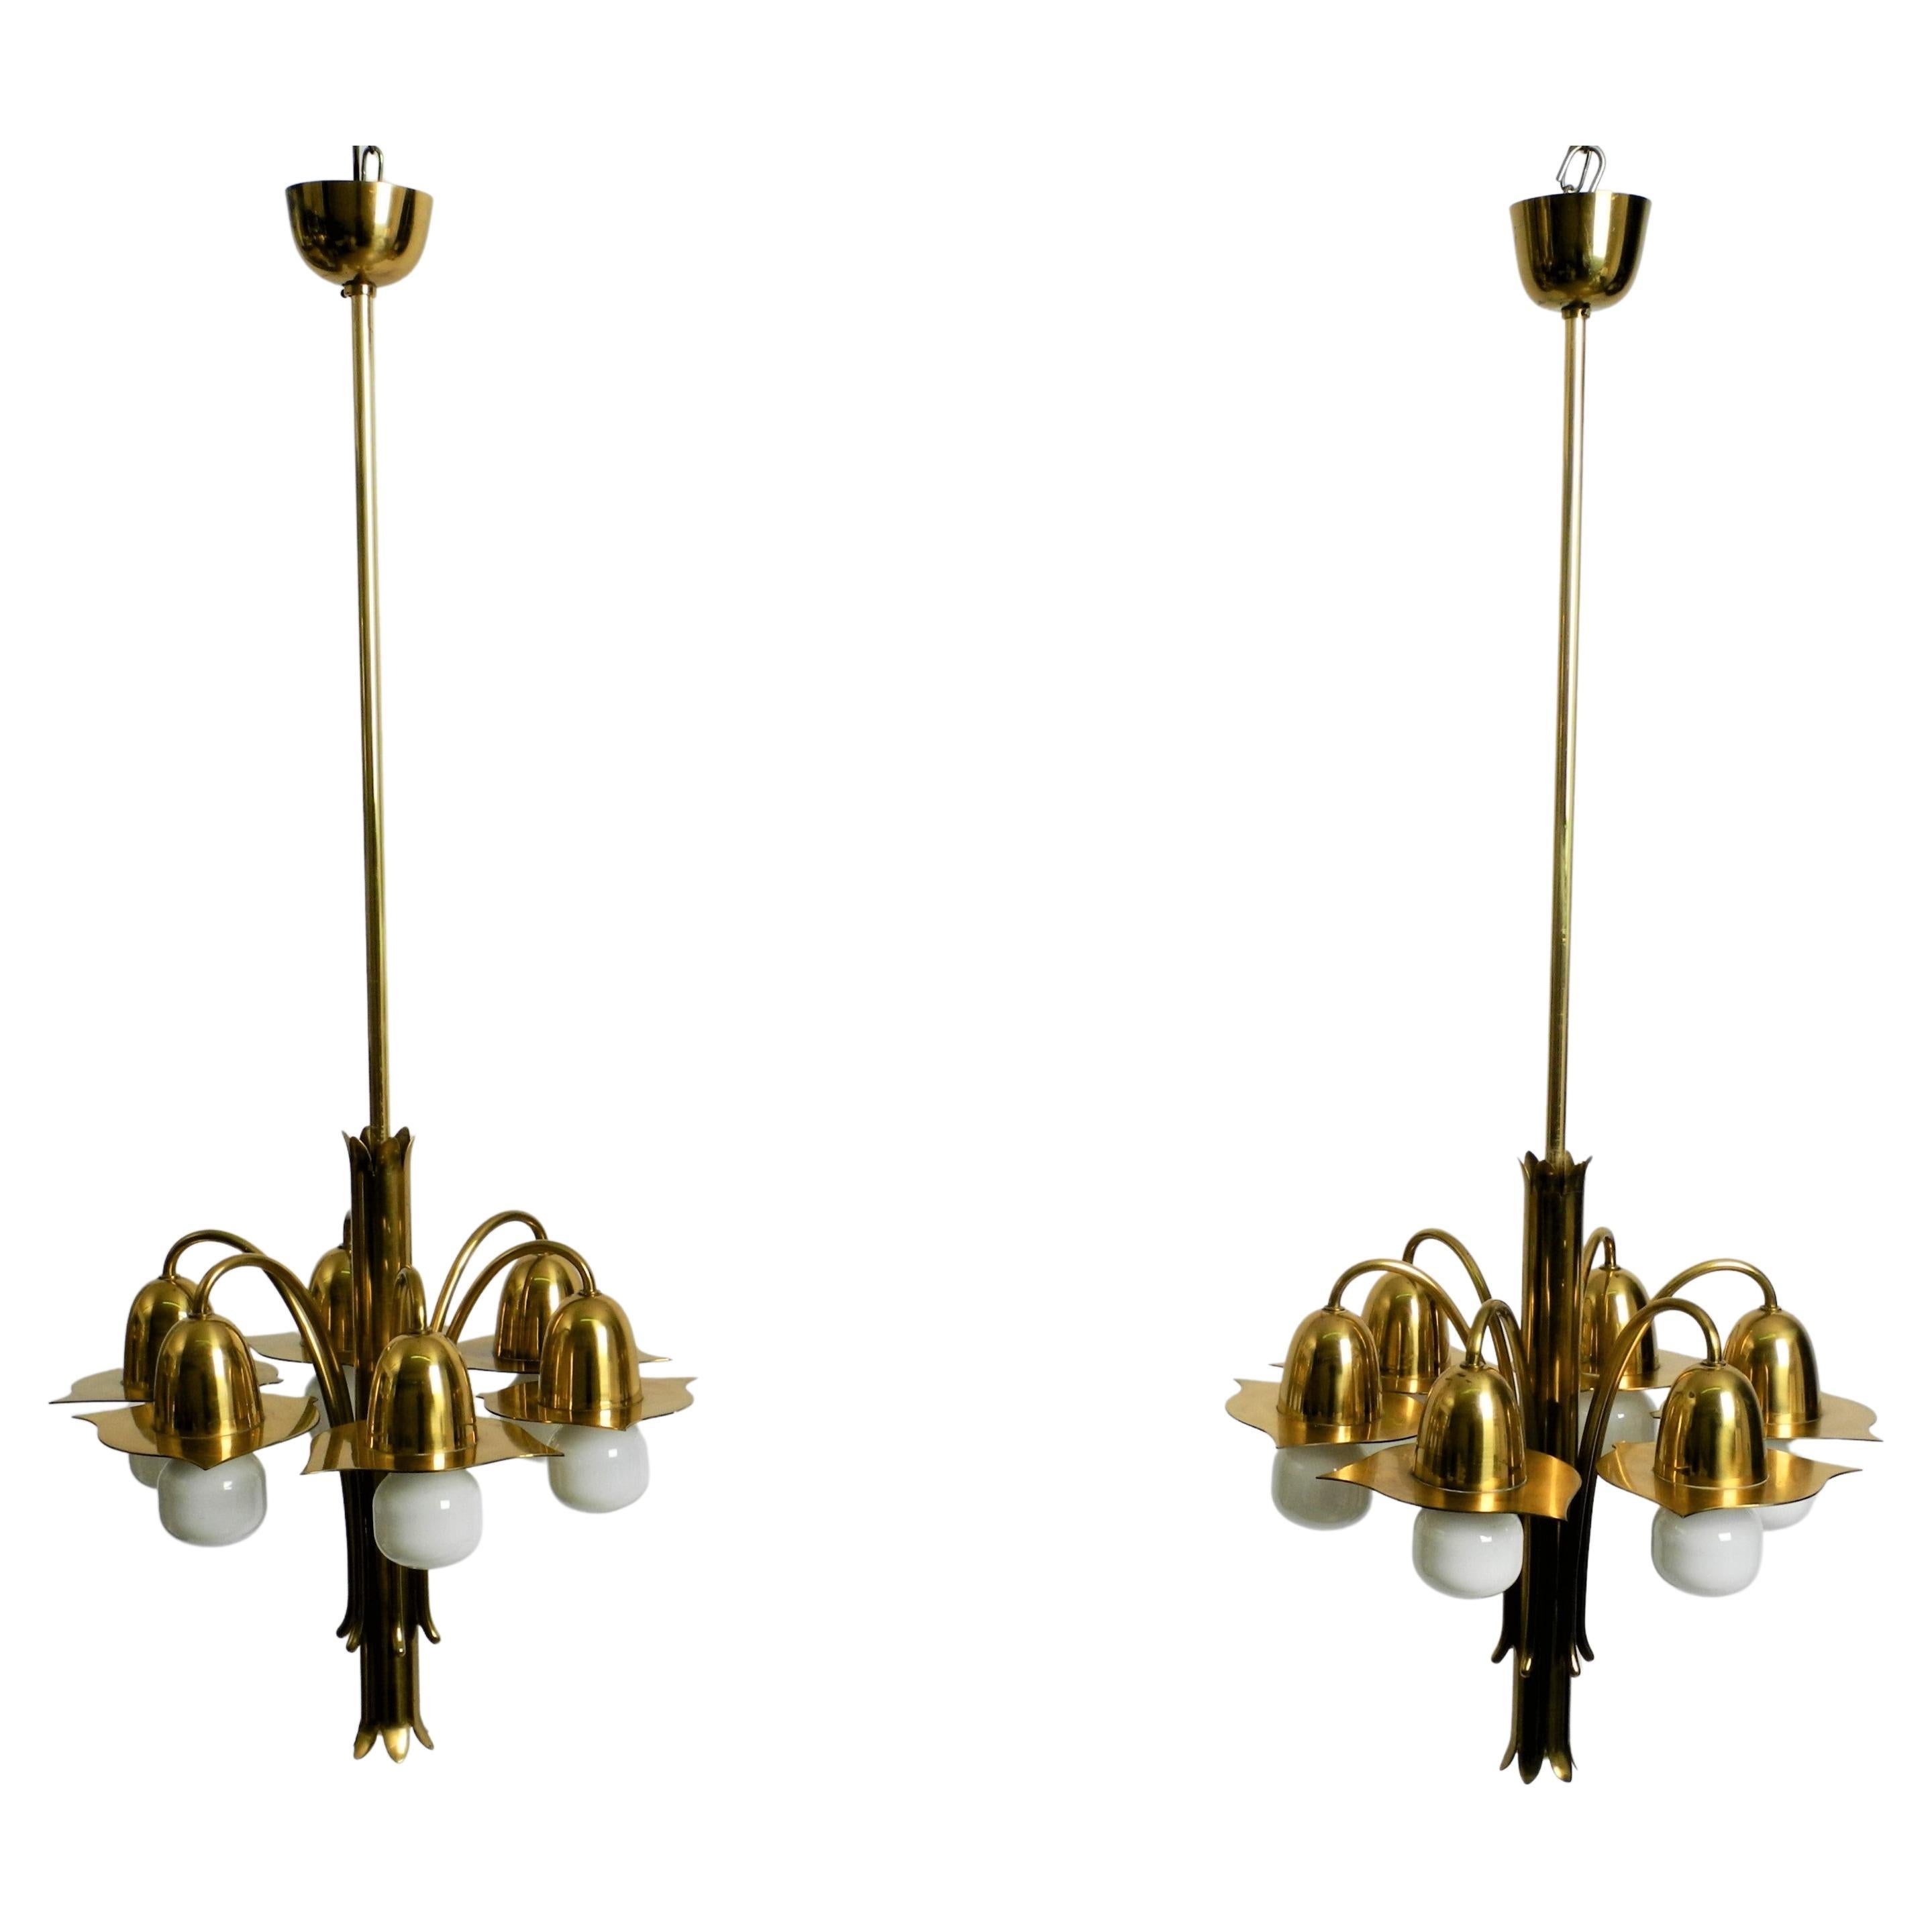 Pair of Richard Riemerschmid Pendant Lamps Chandeliers Art Nouveau, Germany 1920 For Sale